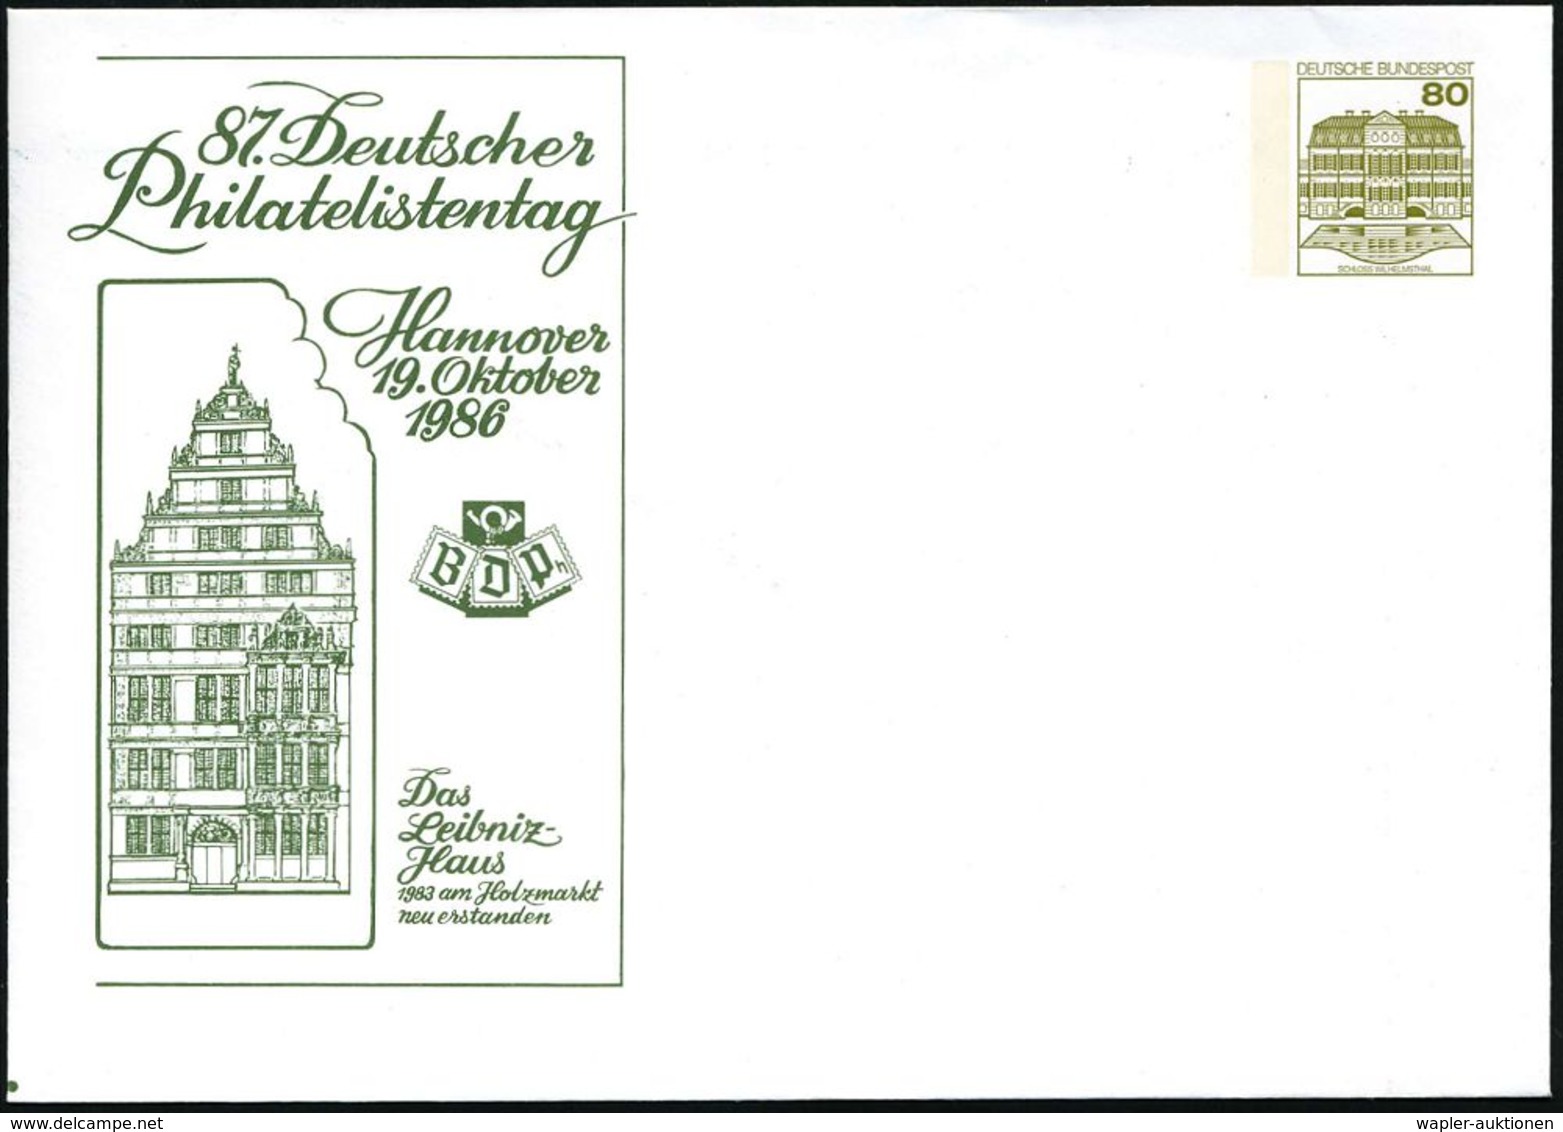 Hannover 1986 (19.10.) PU 80 Pf. Burgen; 87. Deutscher Philatel.Tag/ Das Leibnitz-Haus (1983 Erneuert) Ungebr., Leibnitz - Non Classés